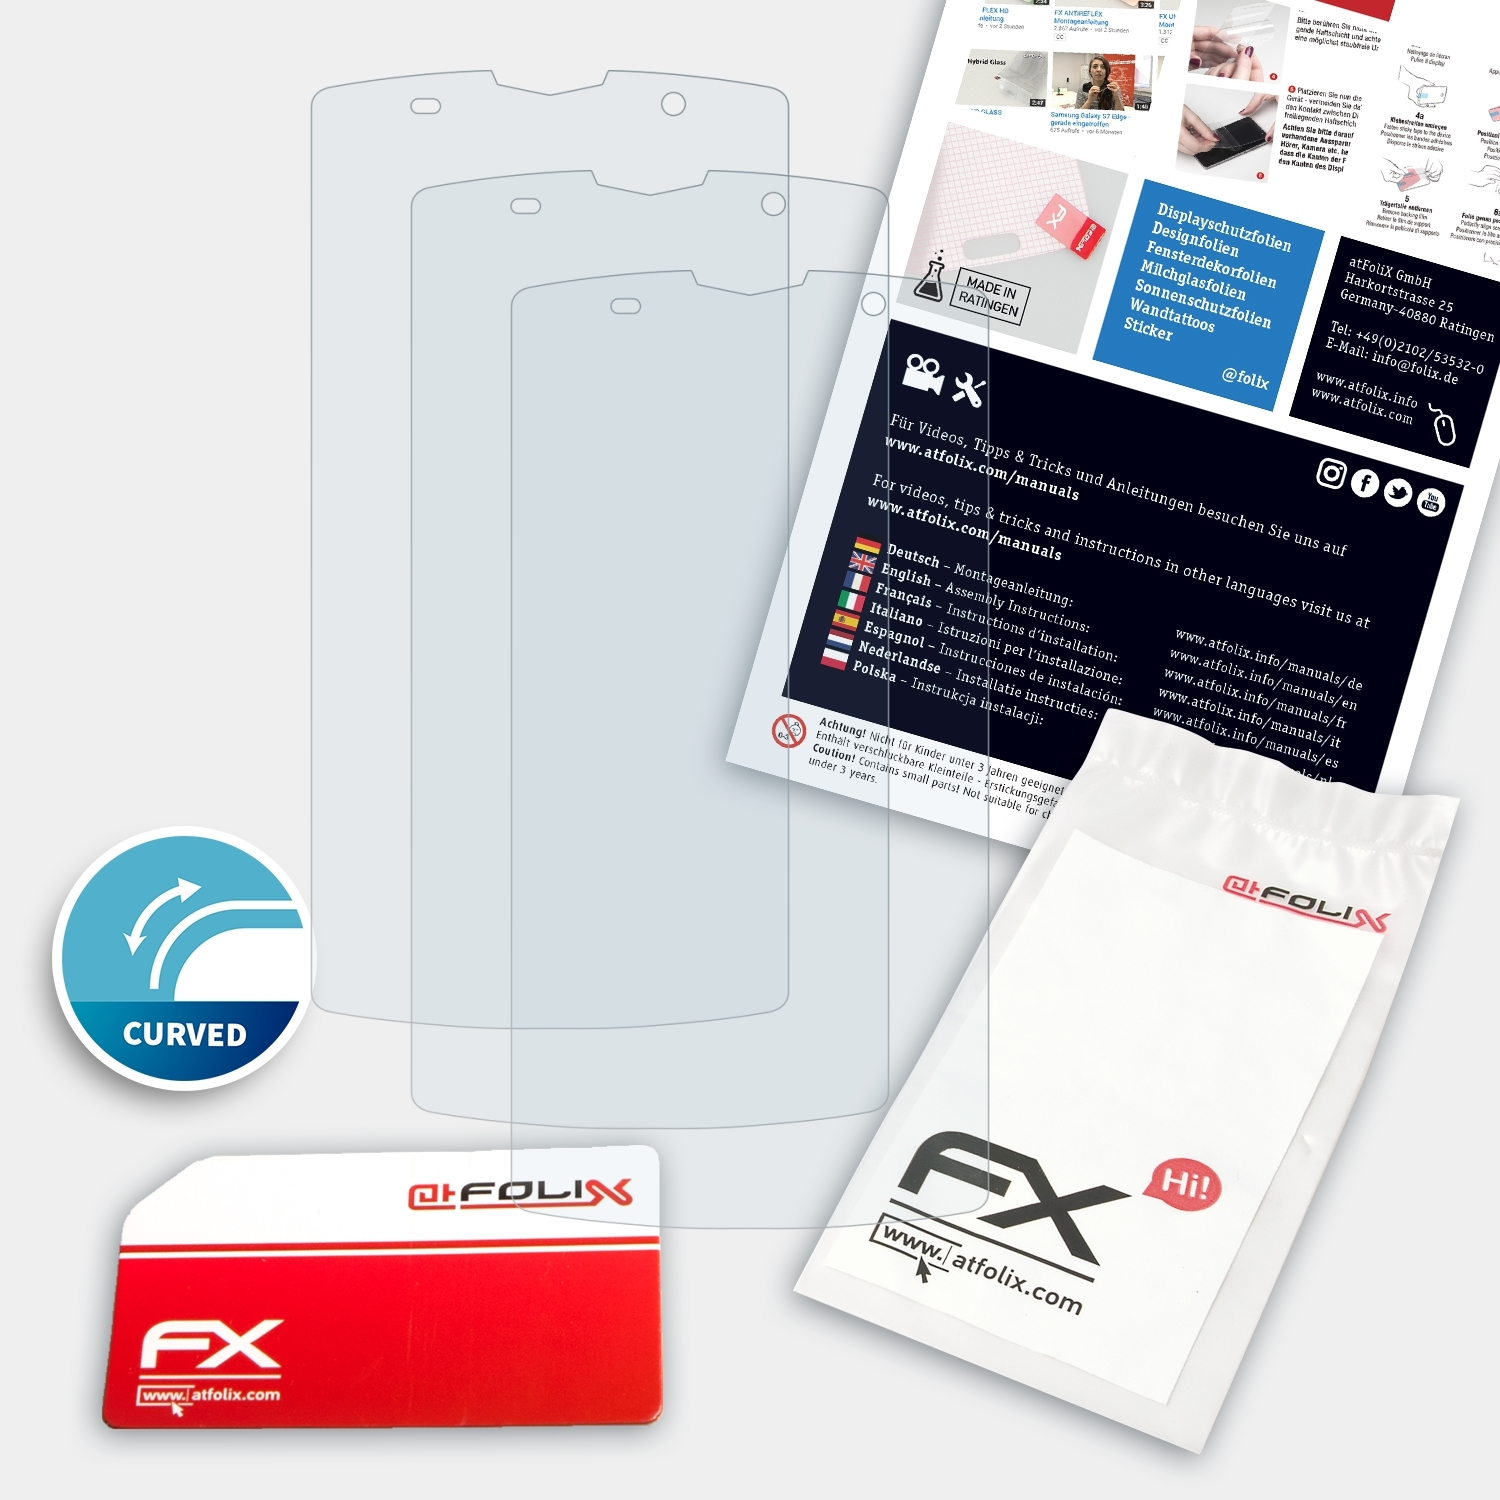 Zoji 3x FX-ActiFleX Z7) ATFOLIX Displayschutz(für